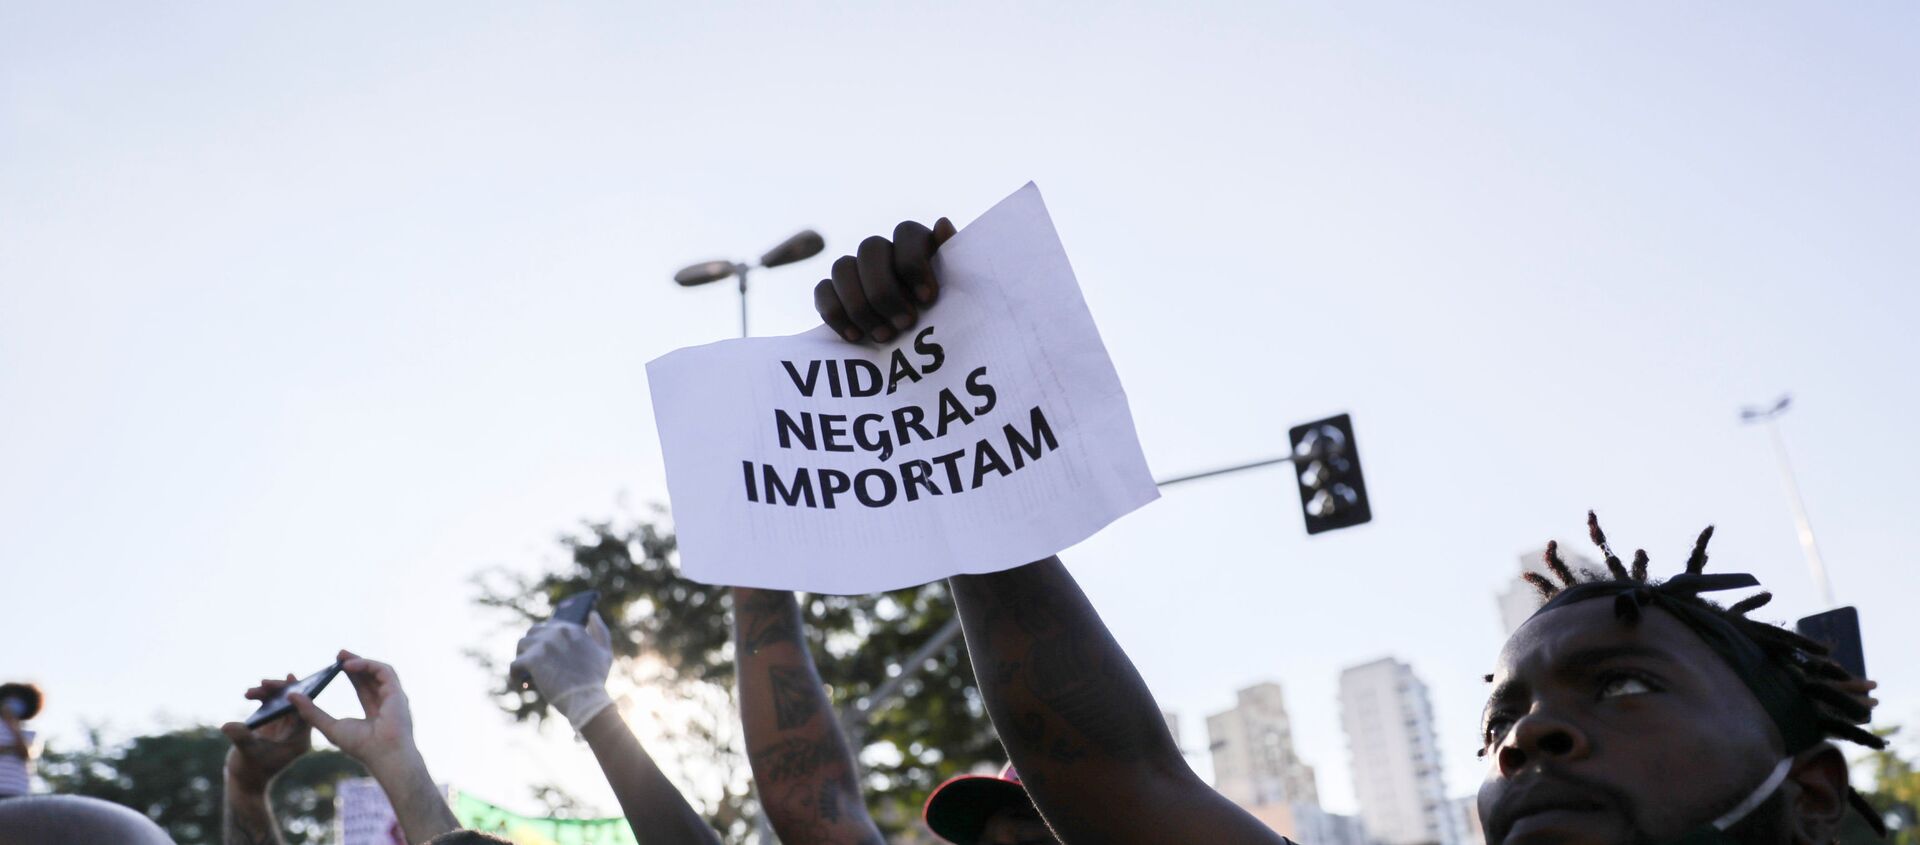 Manifestantes contra el racismo durante una protesta en Sao Paulo, Brasil - Sputnik Mundo, 1920, 08.06.2020